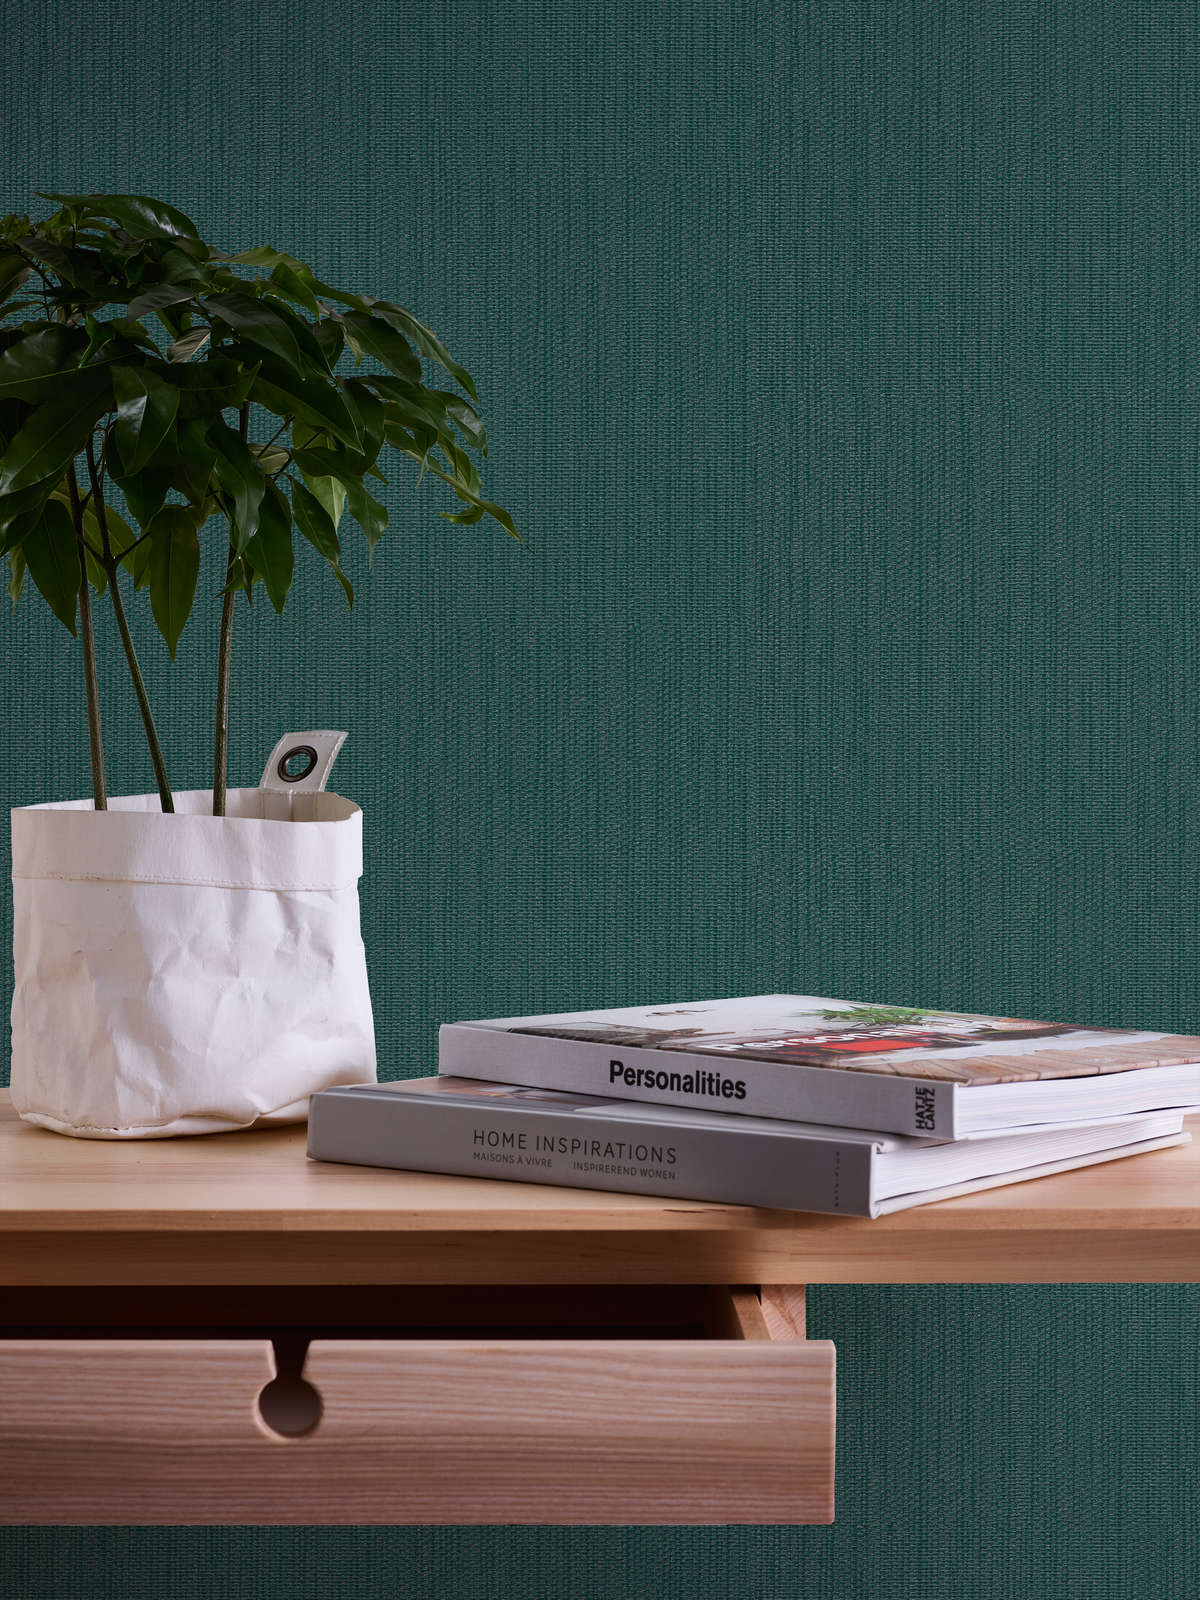             Single-coloured non-woven wallpaper in textile look - green, dark green
        